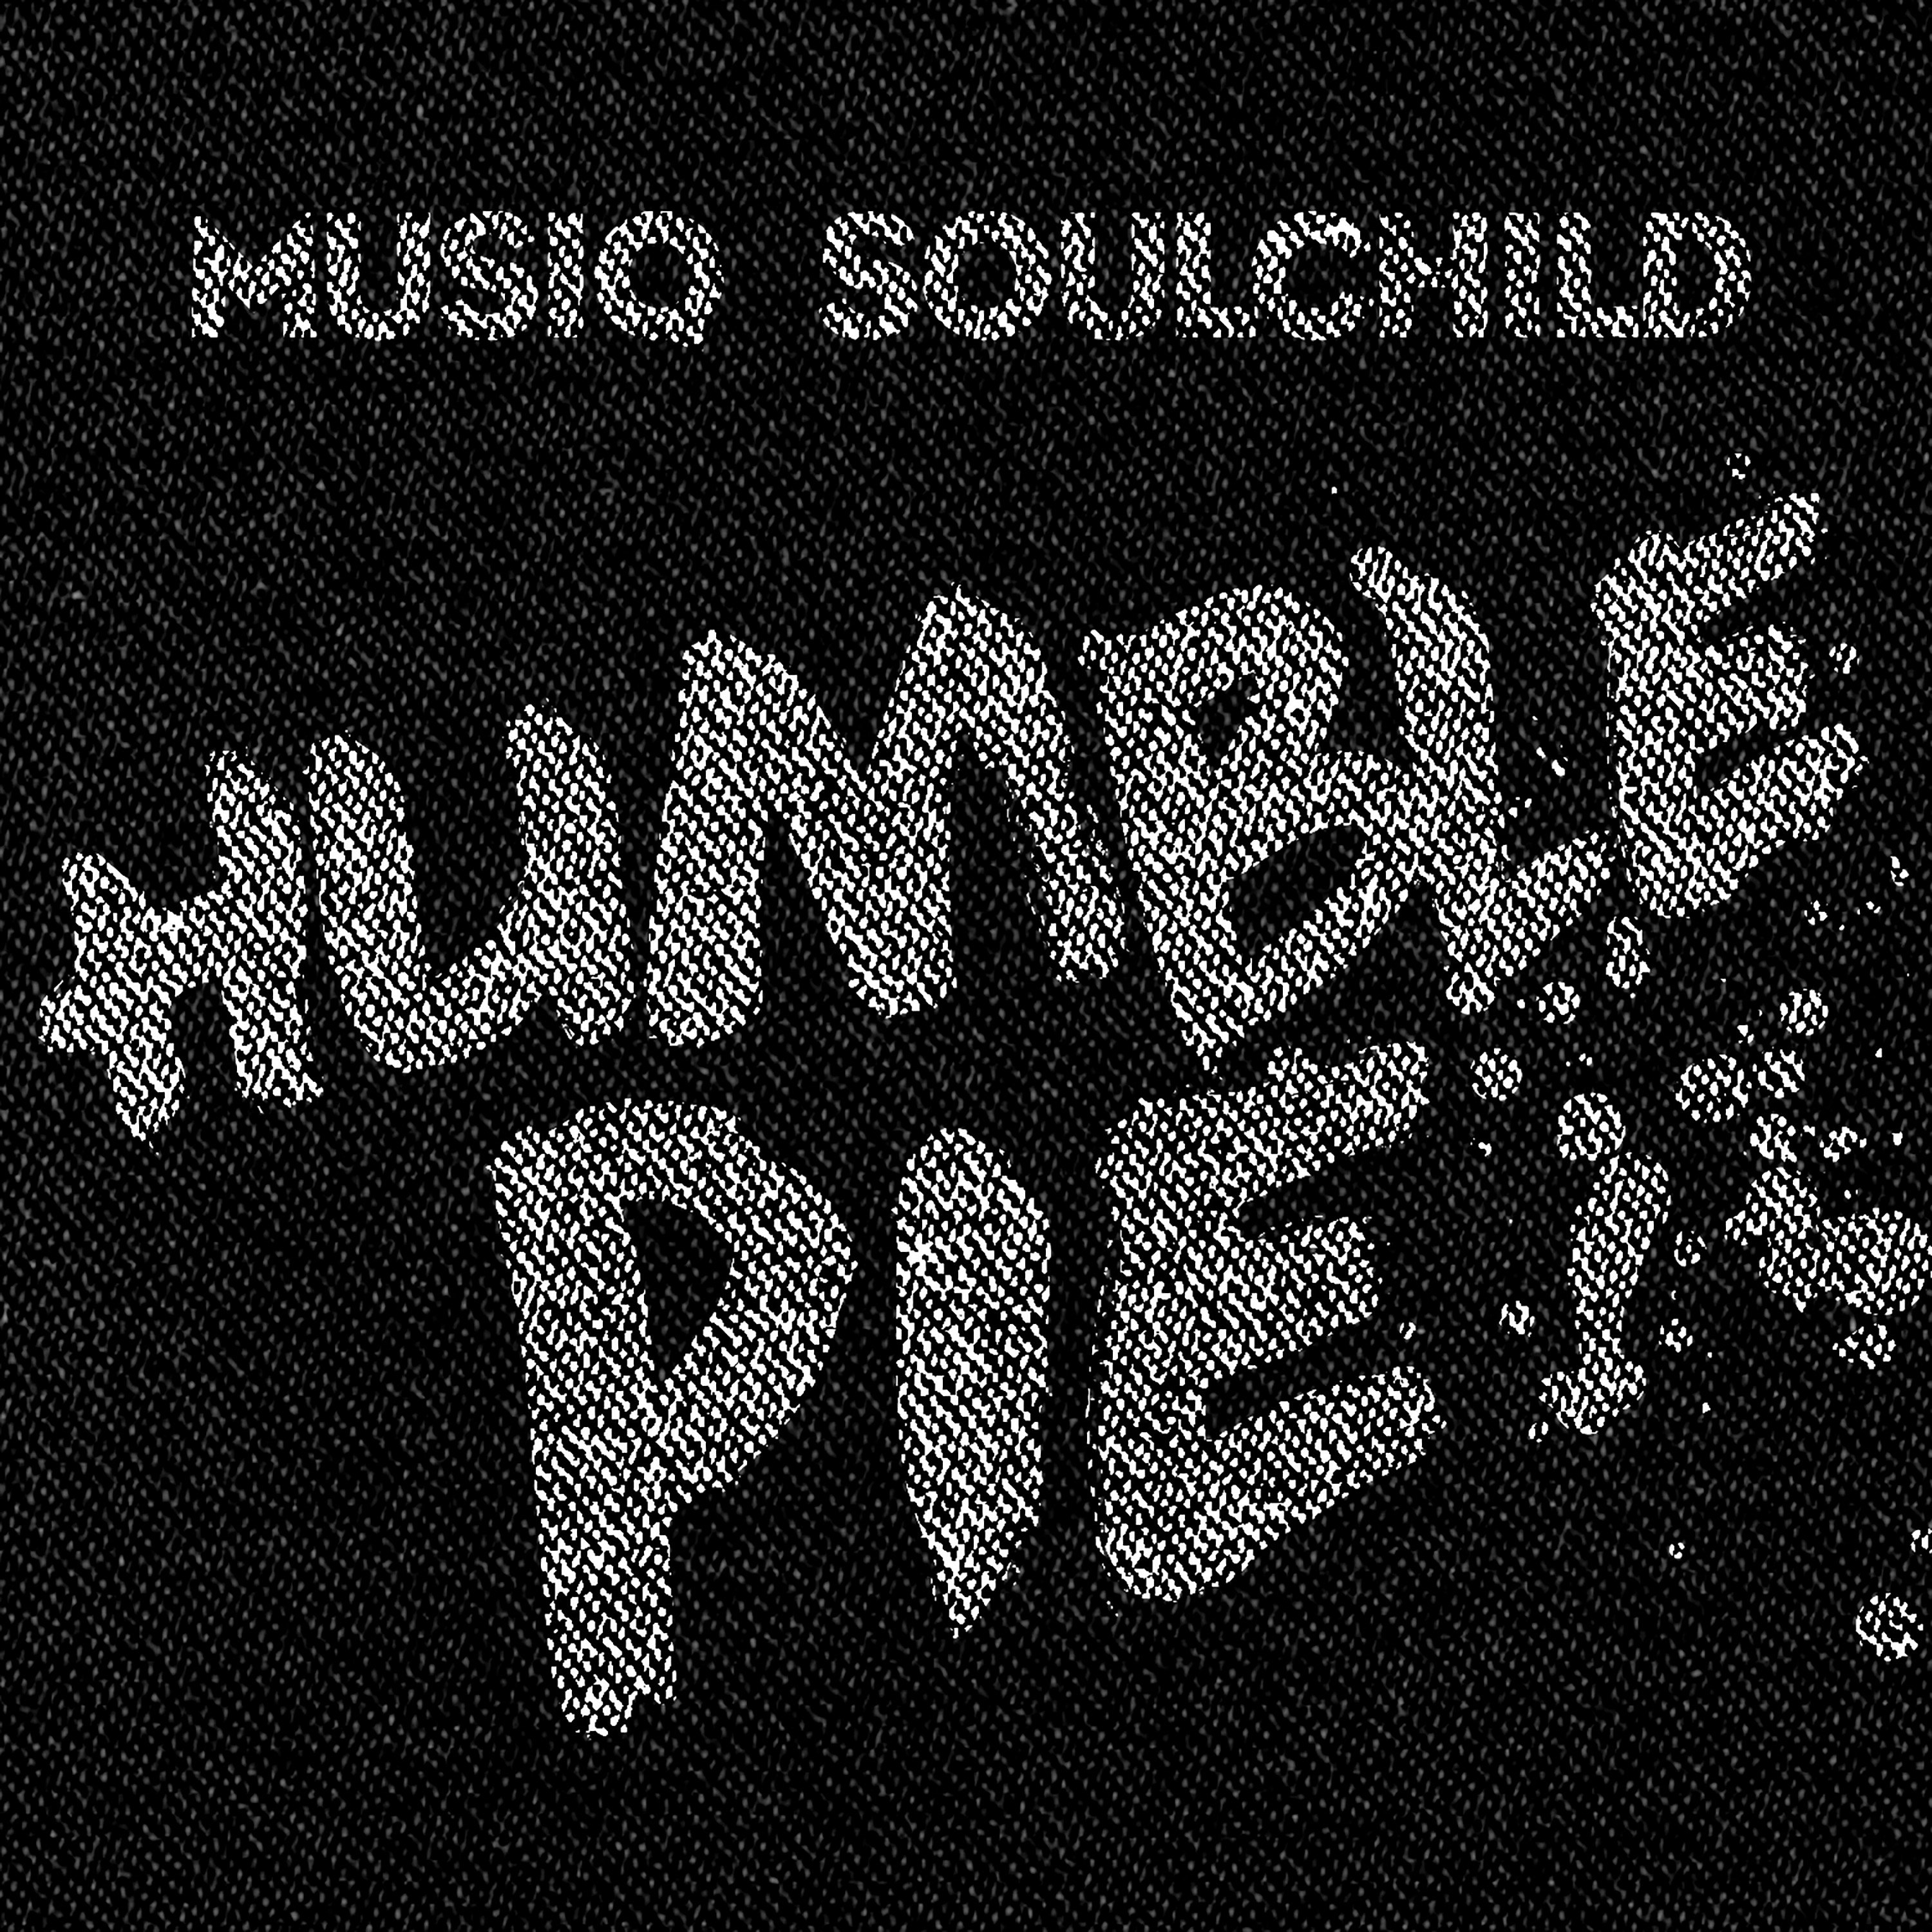 Musiq Soulchild Humble Pie